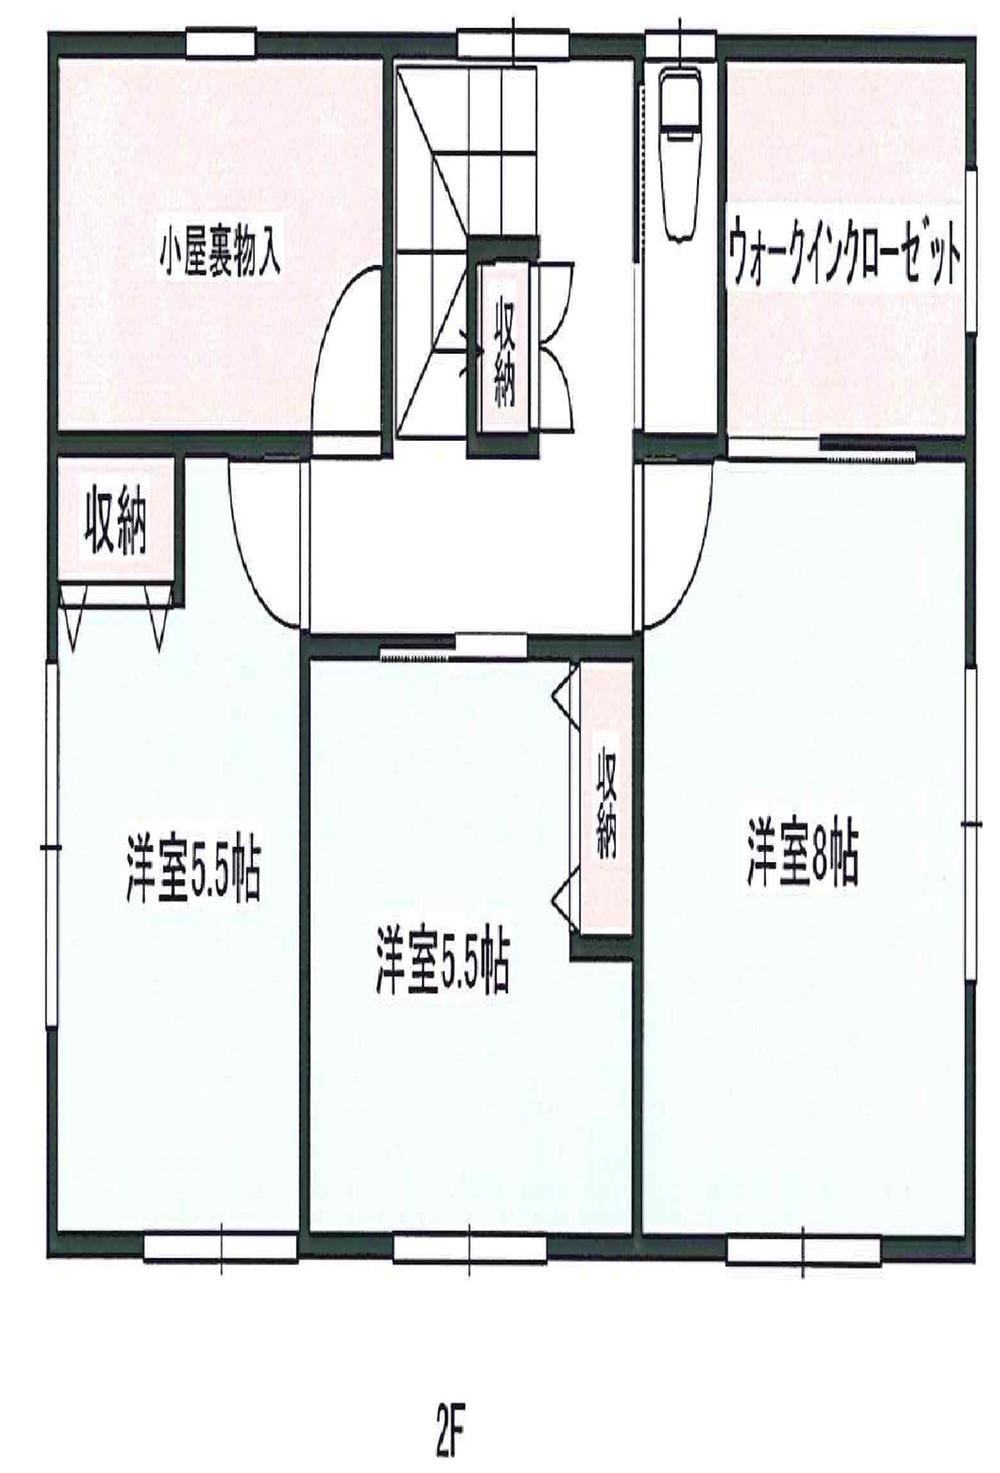 Floor plan. 24,900,000 yen, 4LDK + S (storeroom), Land area 175 sq m , Building area 106.81 sq m 2F (8 Hiroshi ・ 5.5 Hiroshi ・ 5.5 Hiroshi ・ 4.5 attic storage)